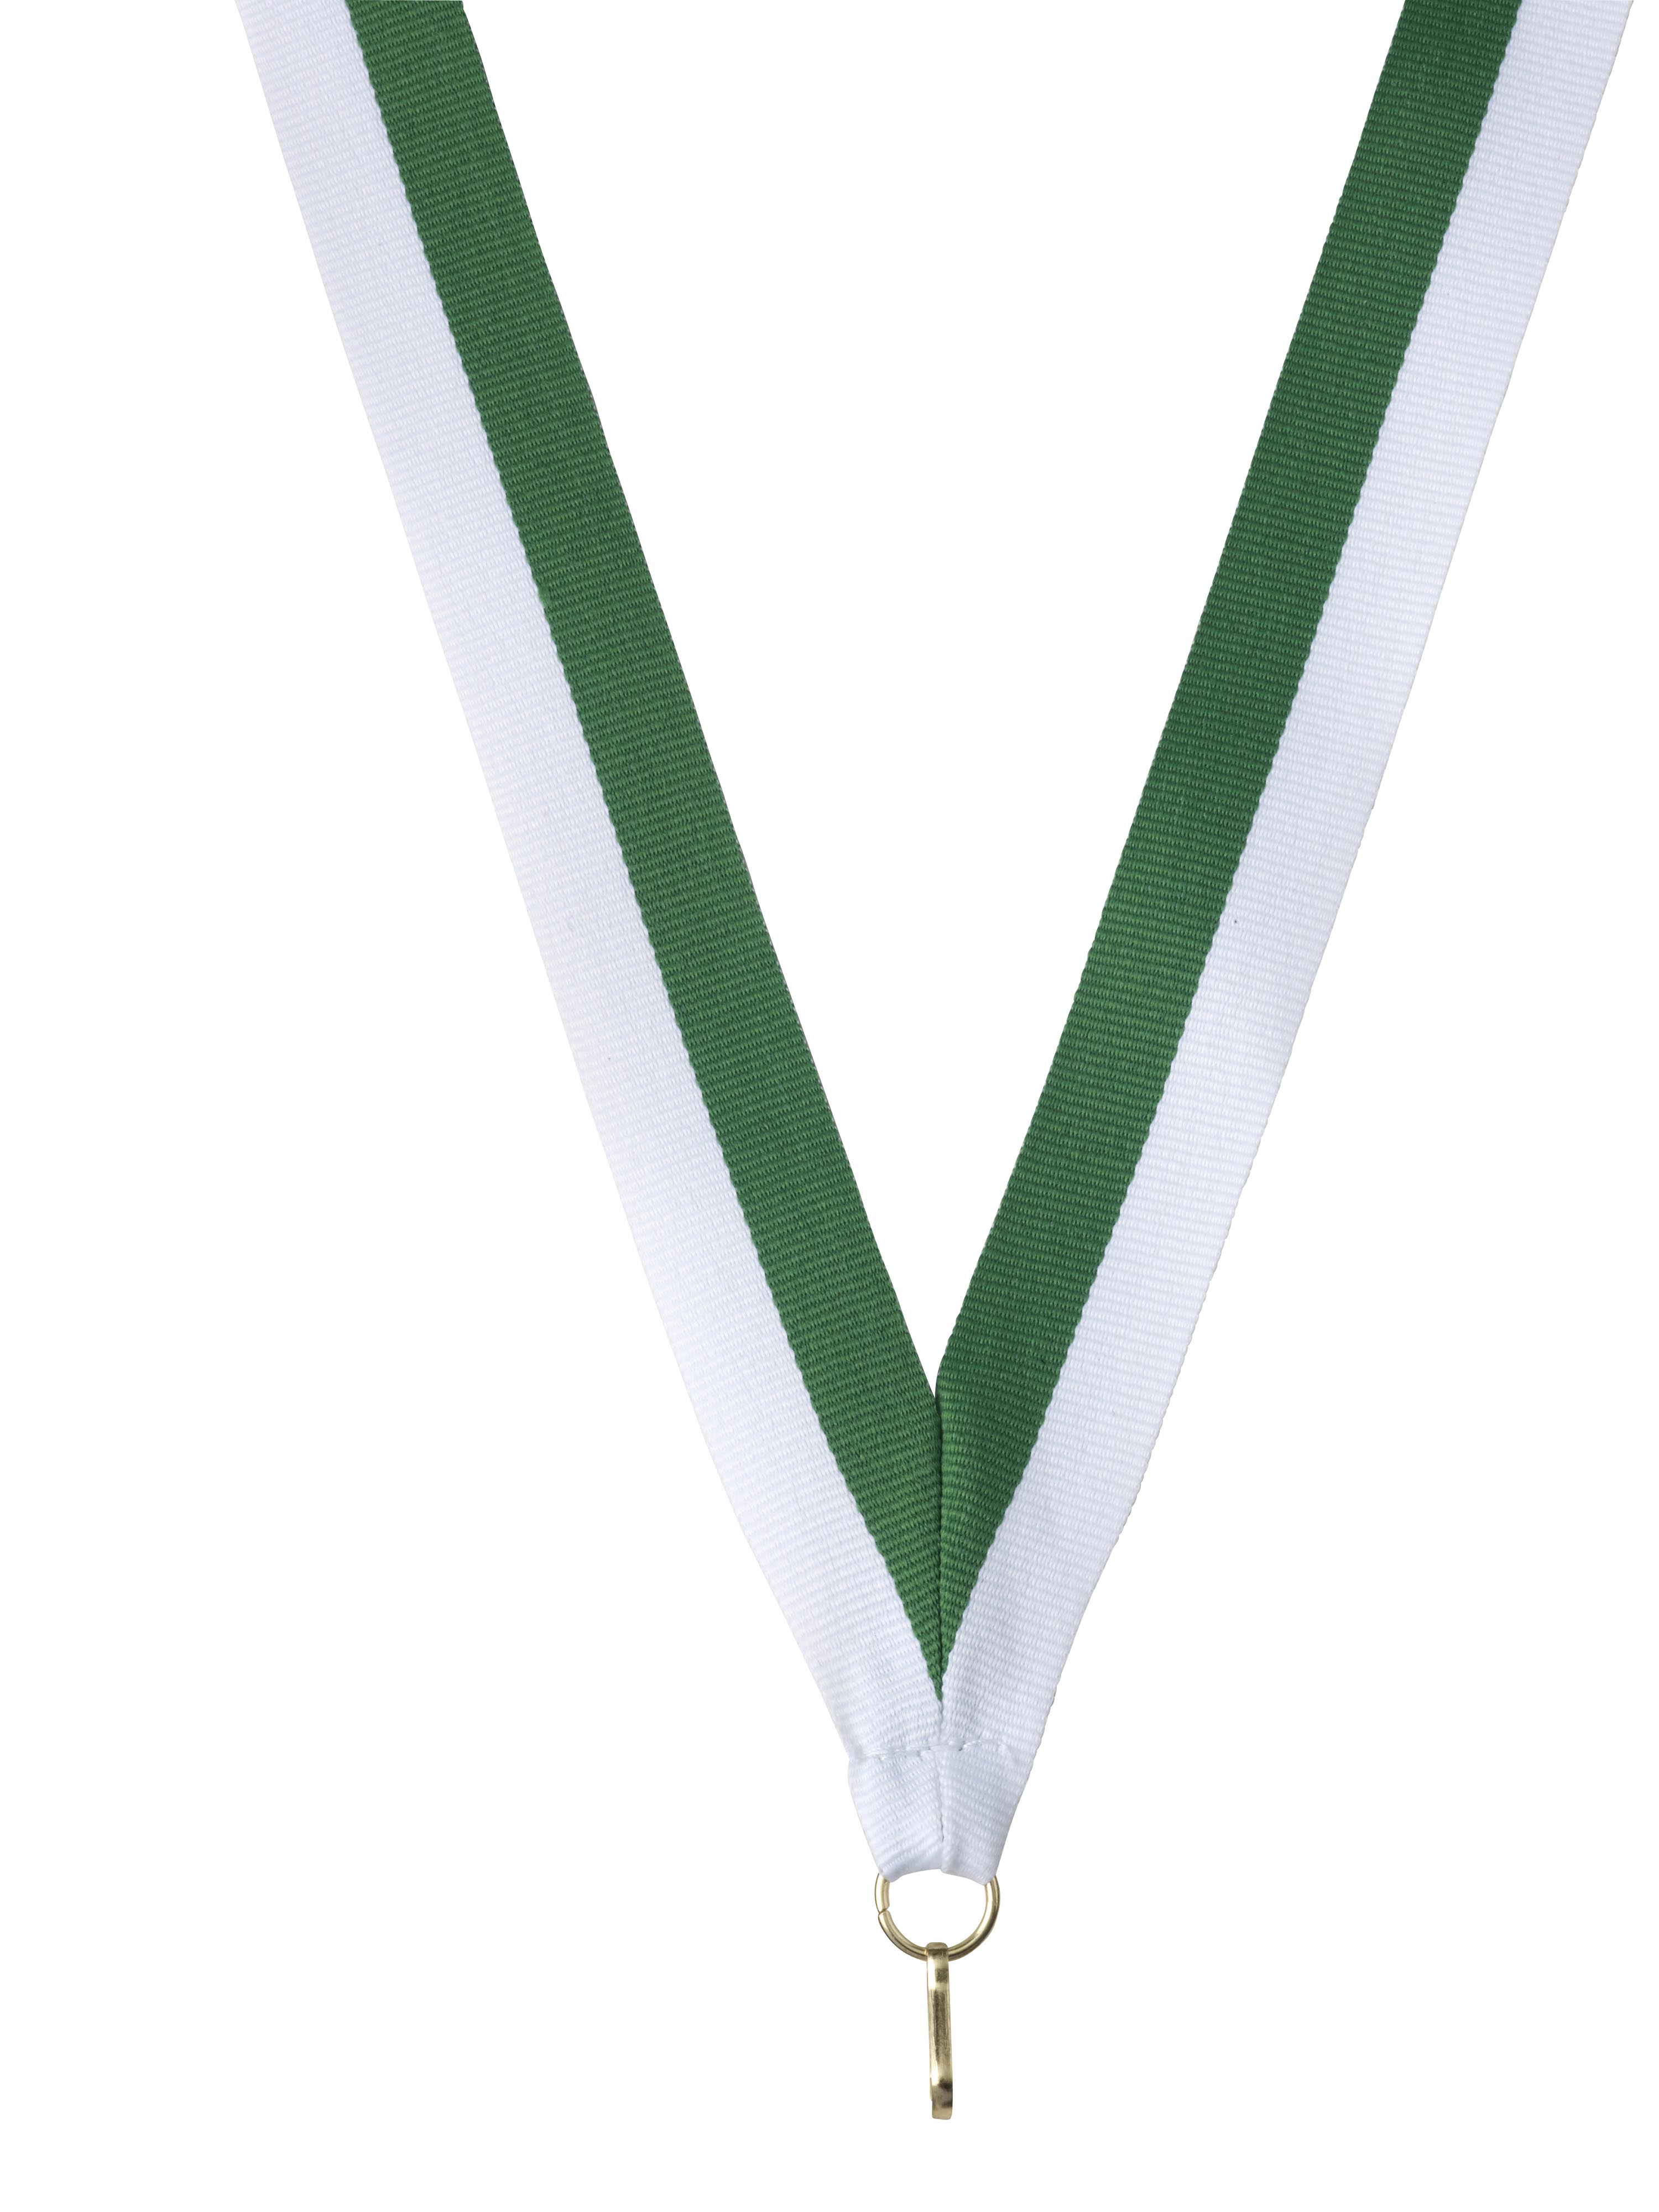 Medaillenband grün-weiß